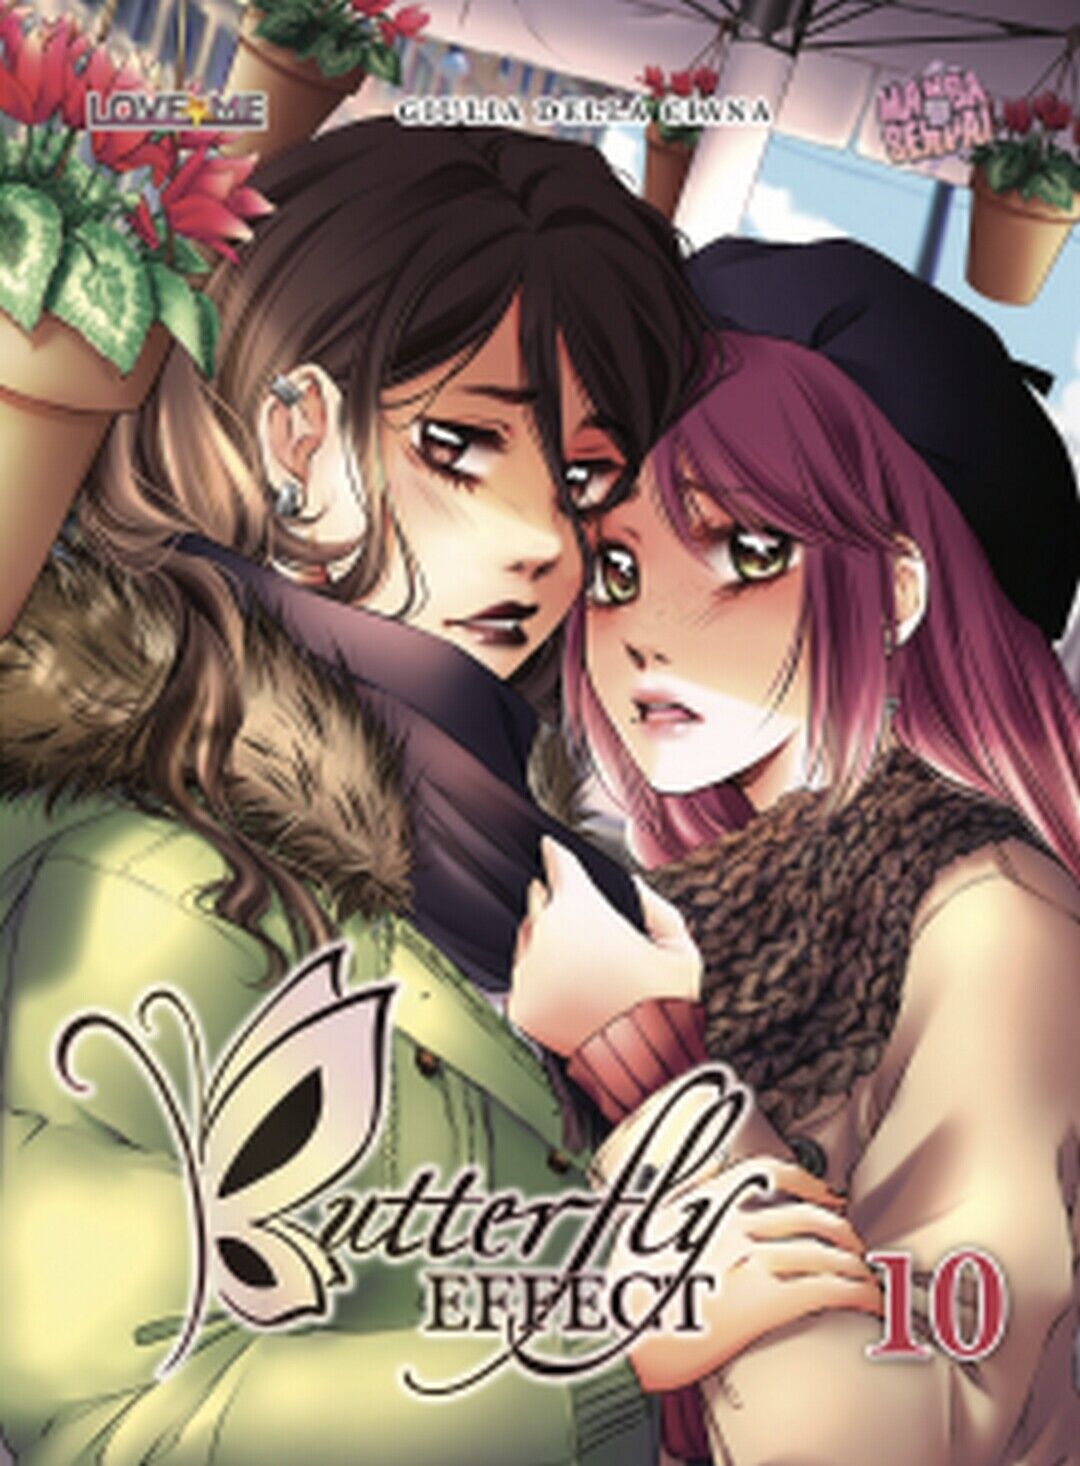 BUTTERFLY EFFECT volume 10  di Giulia Della Ciana (autore),  2020,  Manga Senpai